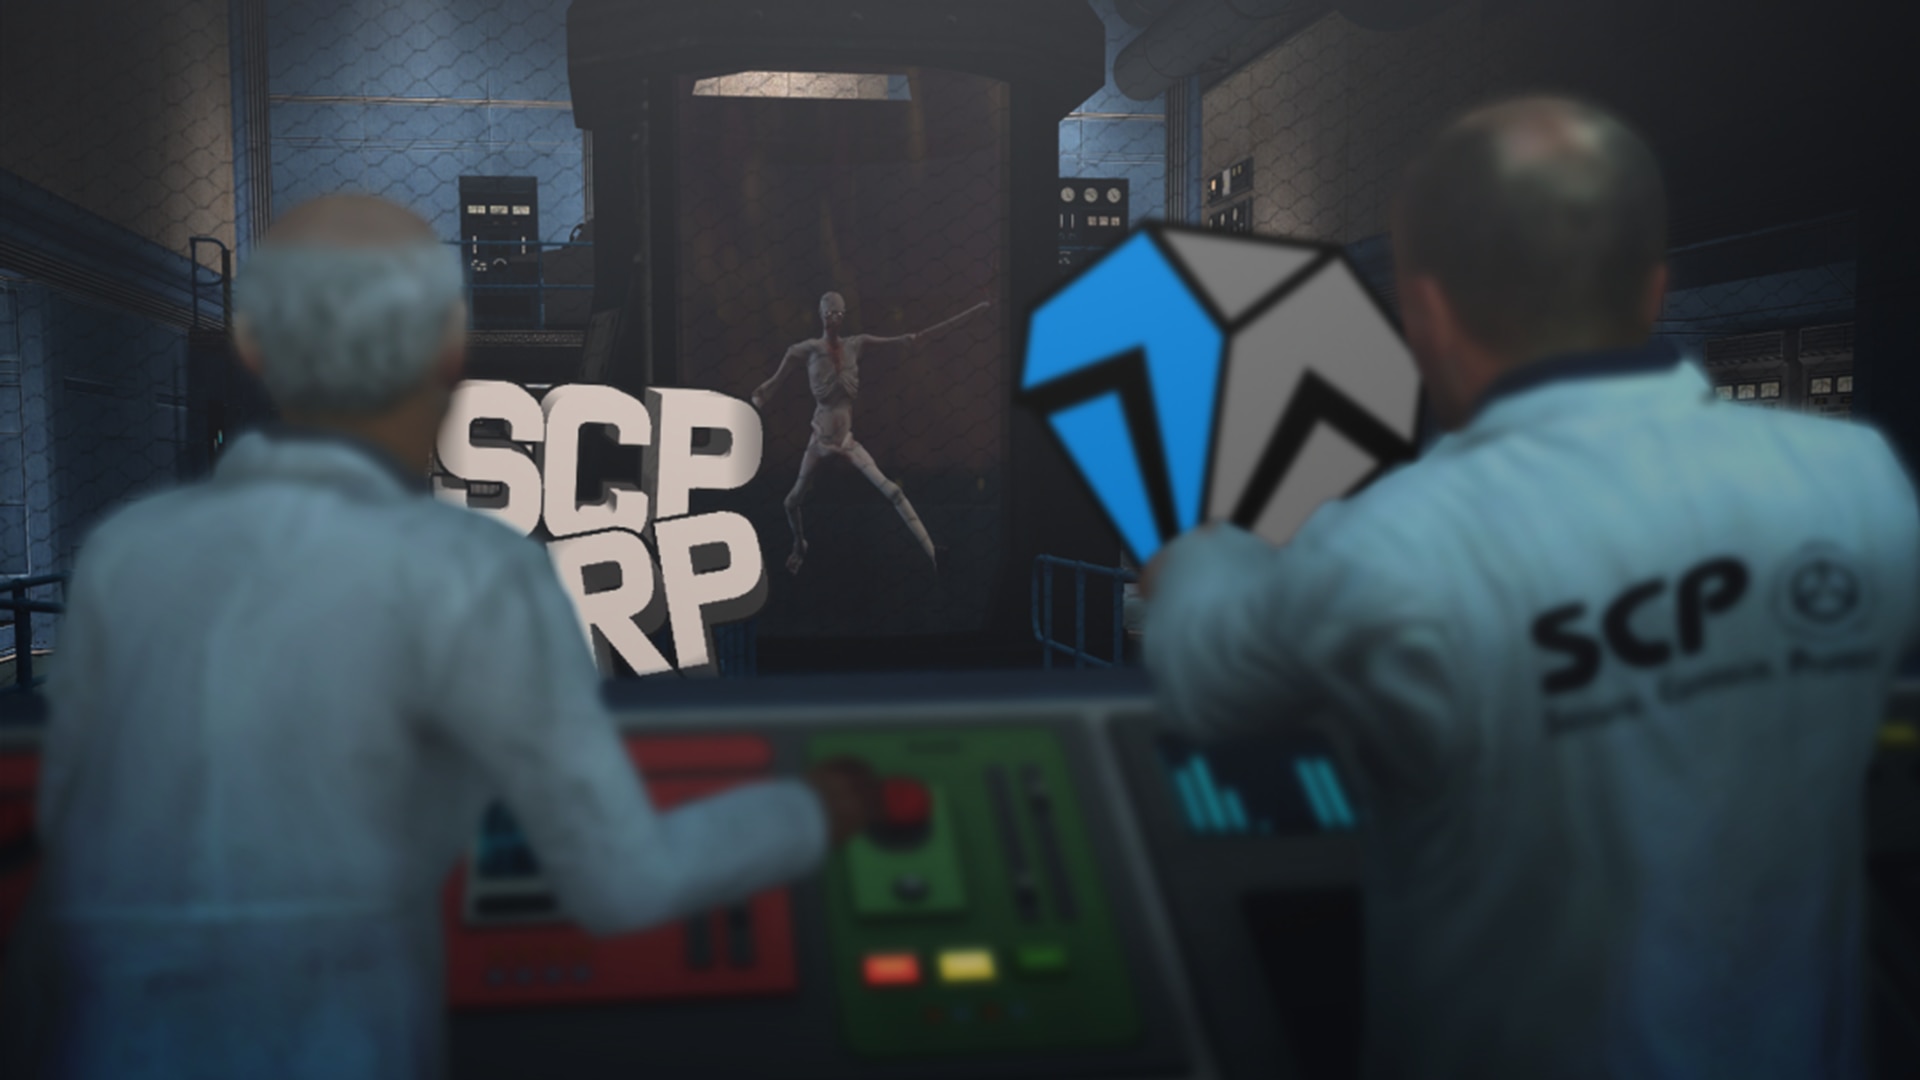 Steam Workshop::SCP-049 Swep